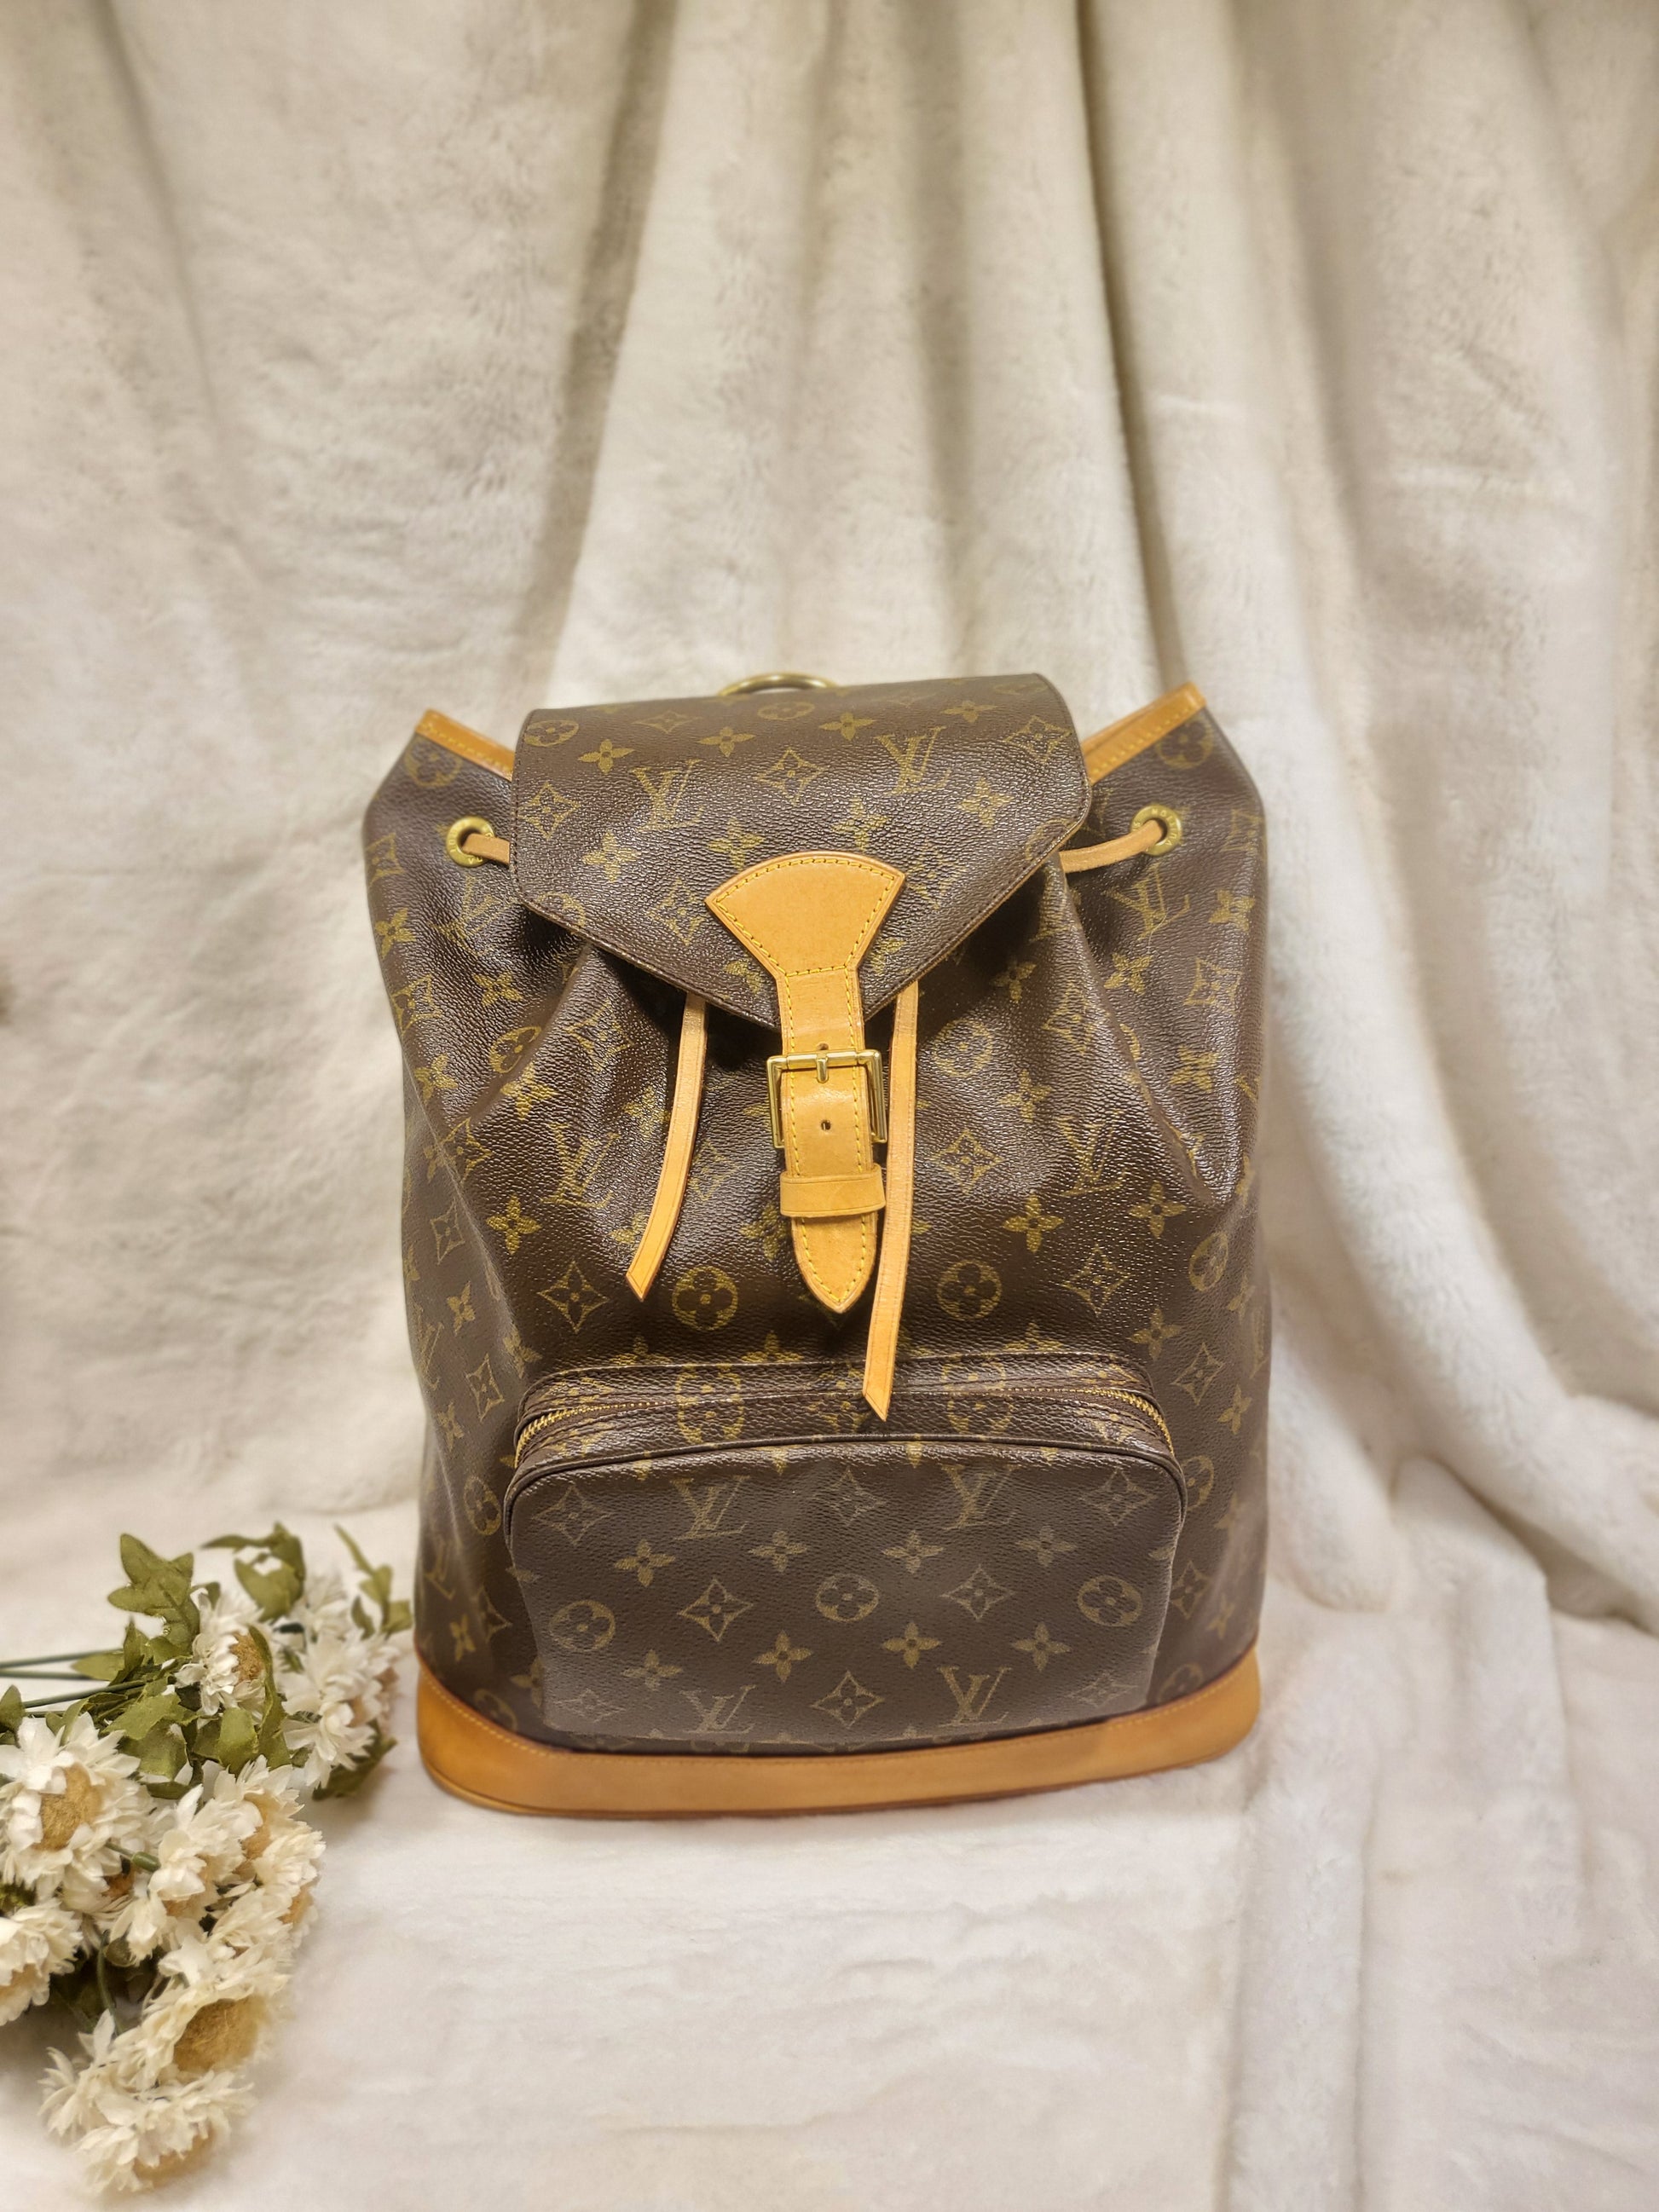 Louis Vuitton, Bags, Beautiful Authentic Louis Vuitton Montsouris Gm